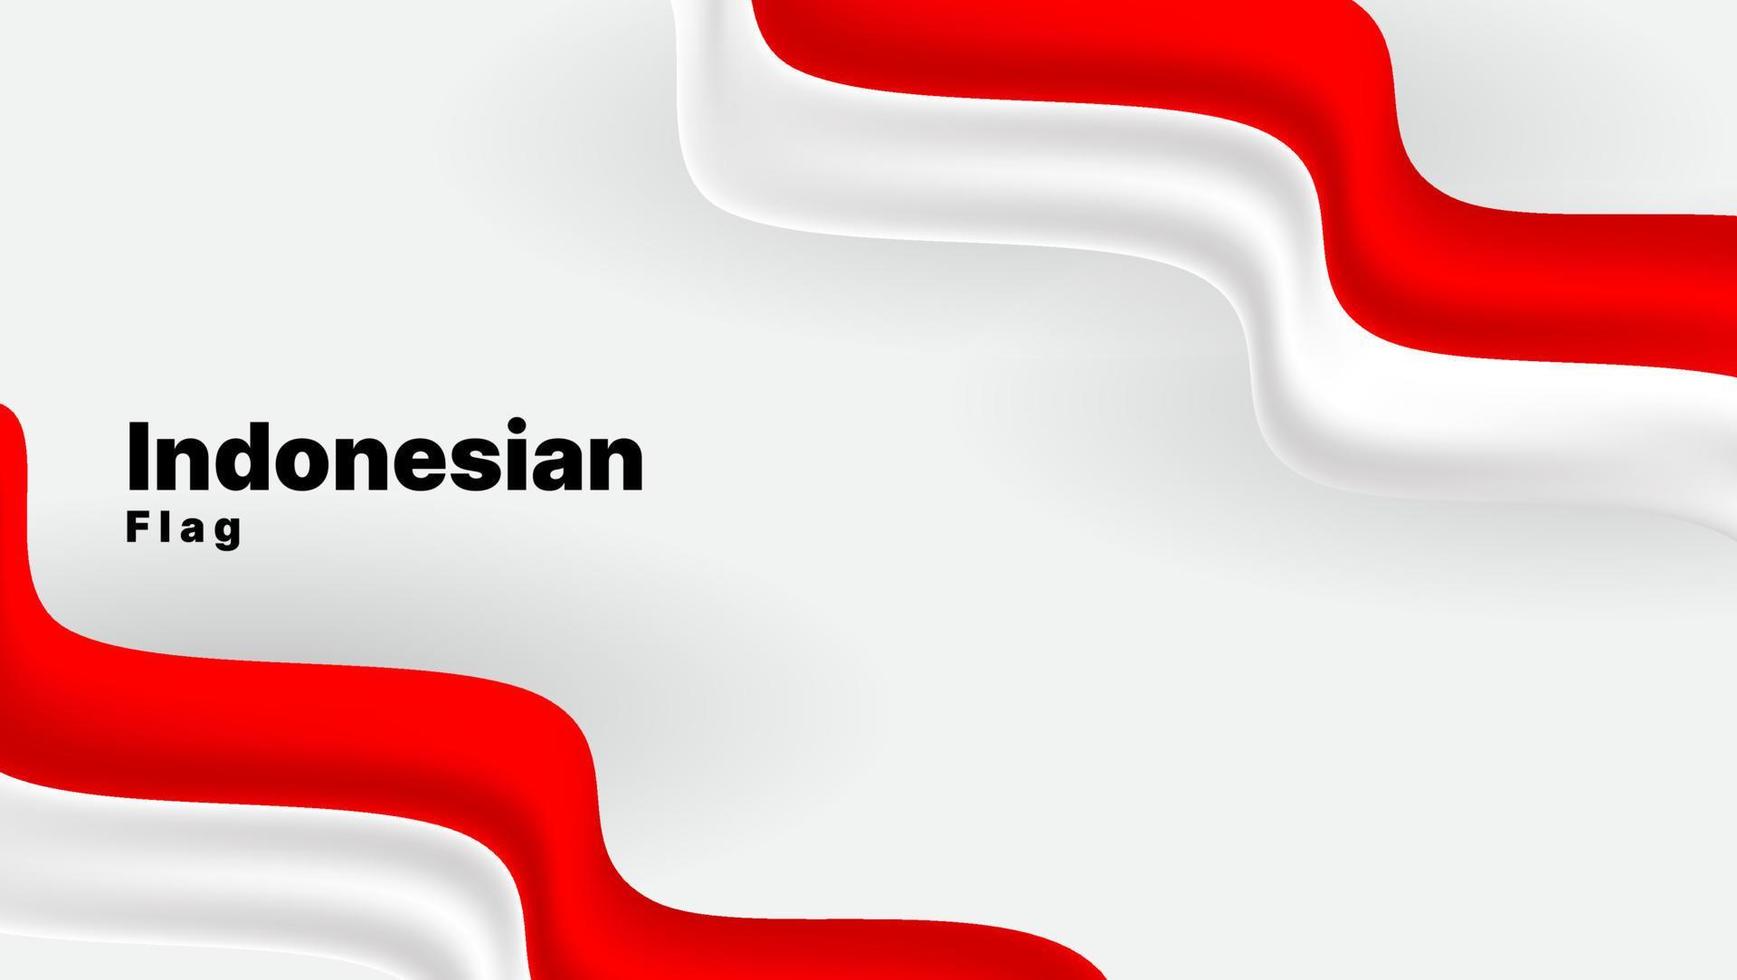 patriottische achtergrond met golvende Indonesische vlag. rode en witte kleur. vector illustratie